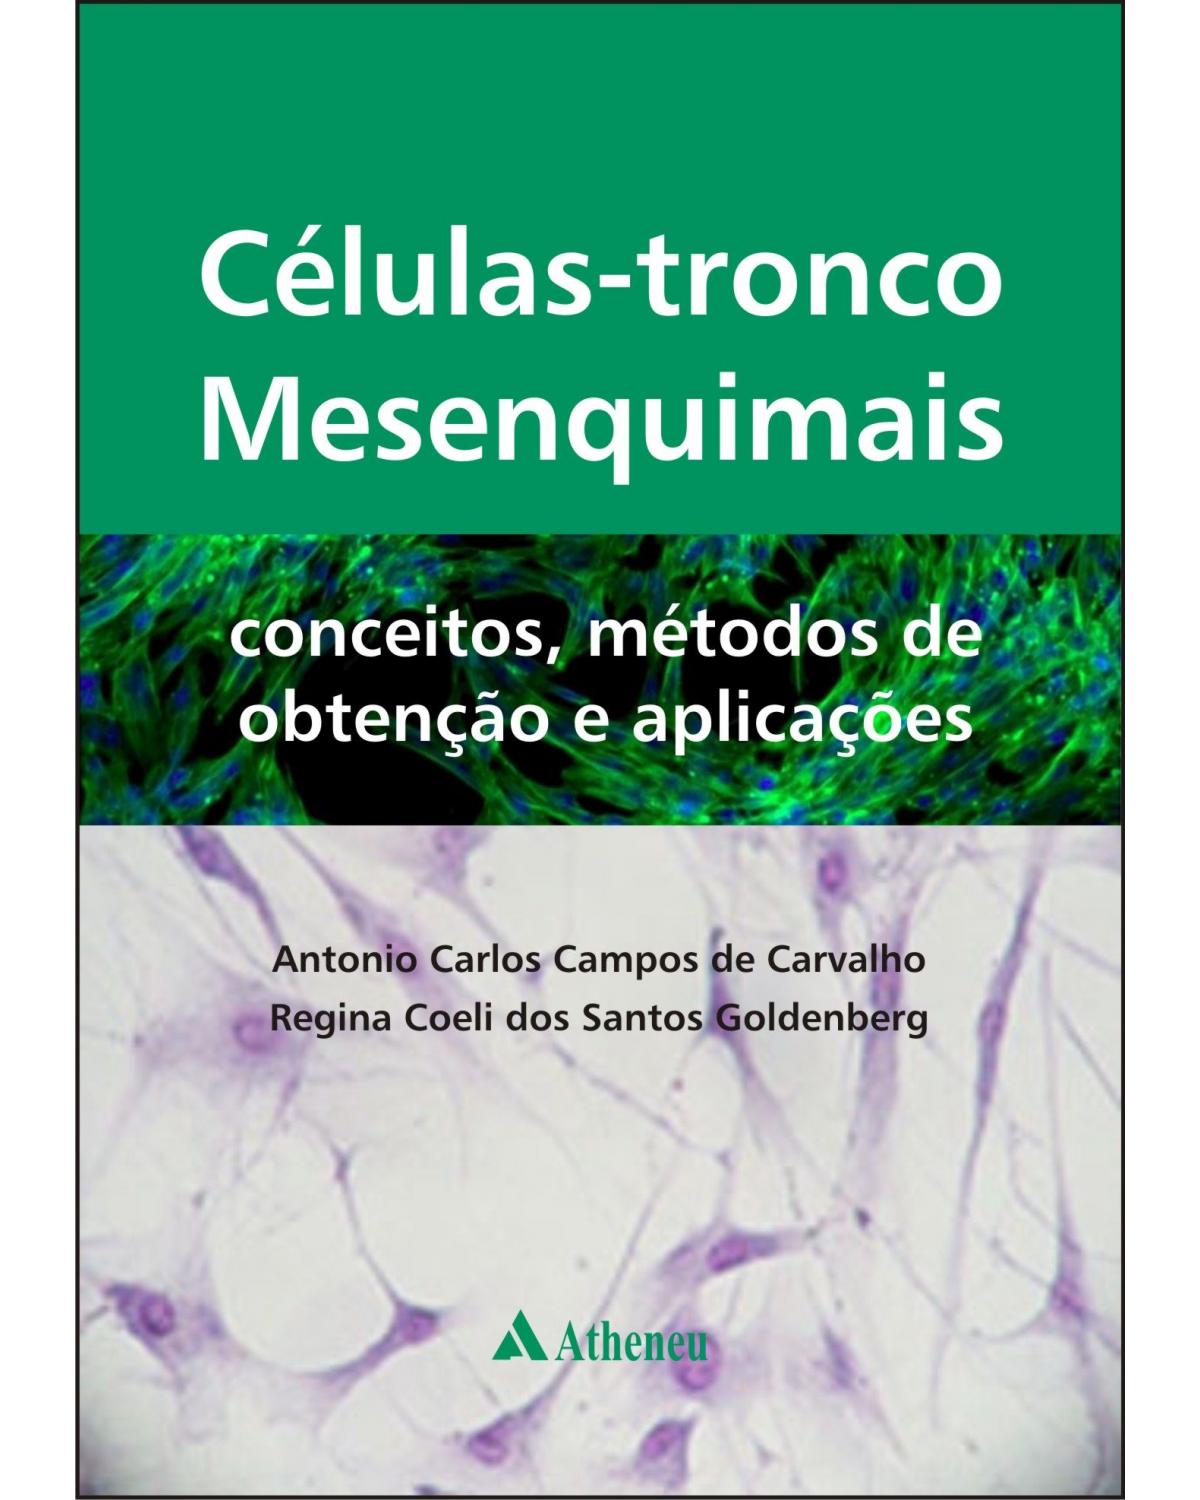 Células-tronco mesenquimais - conceitos, métodos de obtenção e aplicações - 1ª Edição | 2012